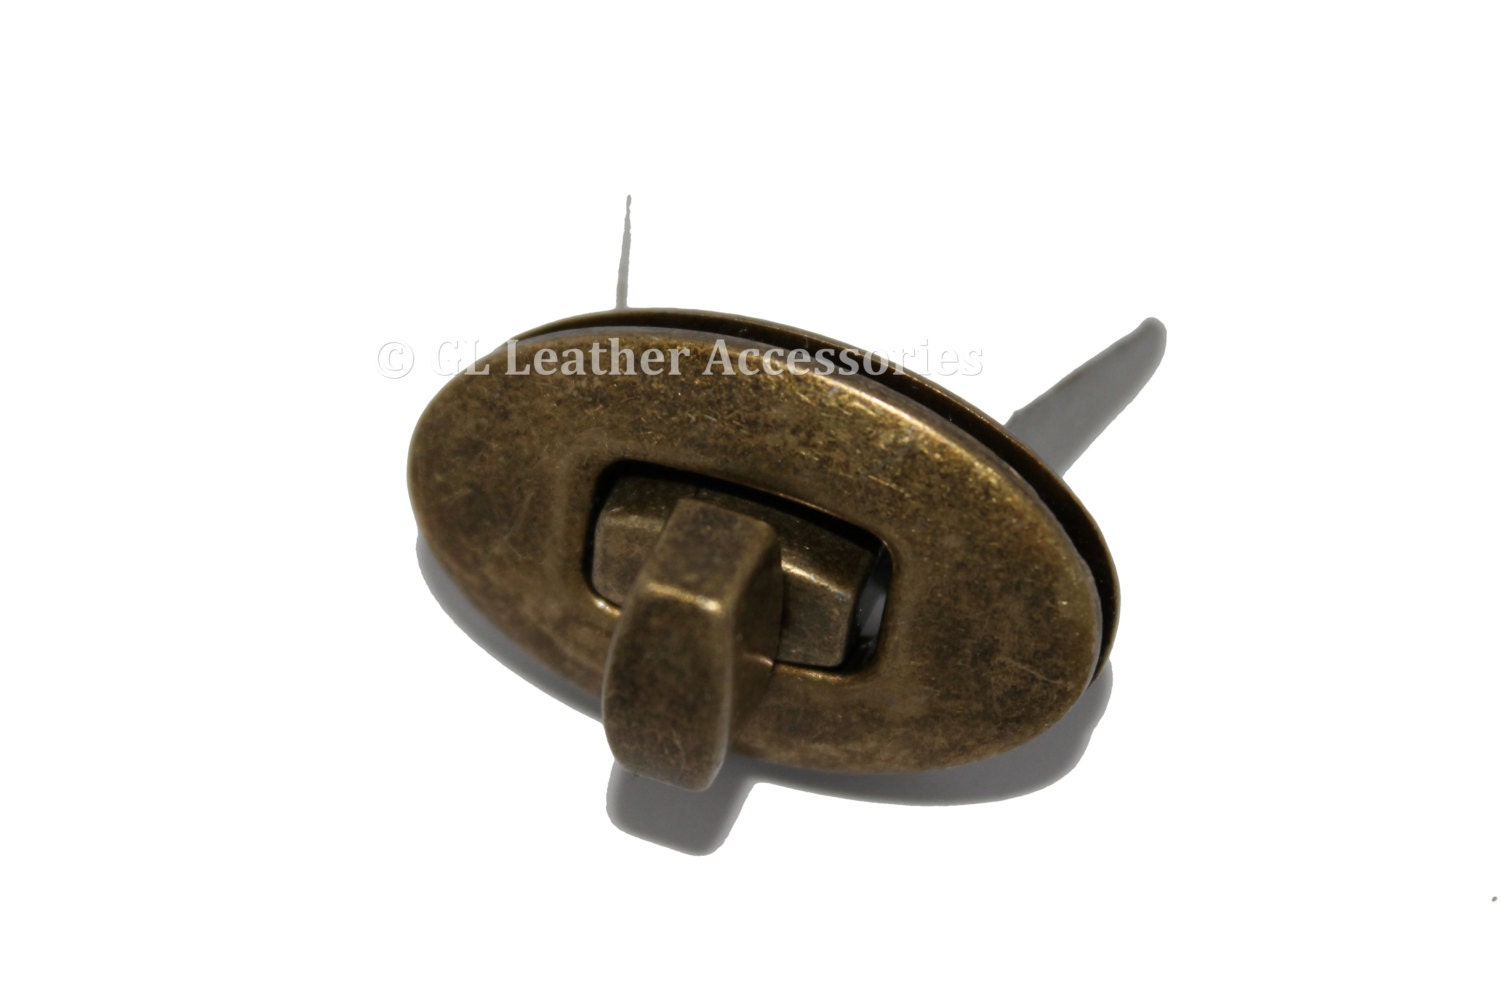 Oval Metal Purse Bag Twist Turn Lock 3.1cm x 1.9cm 